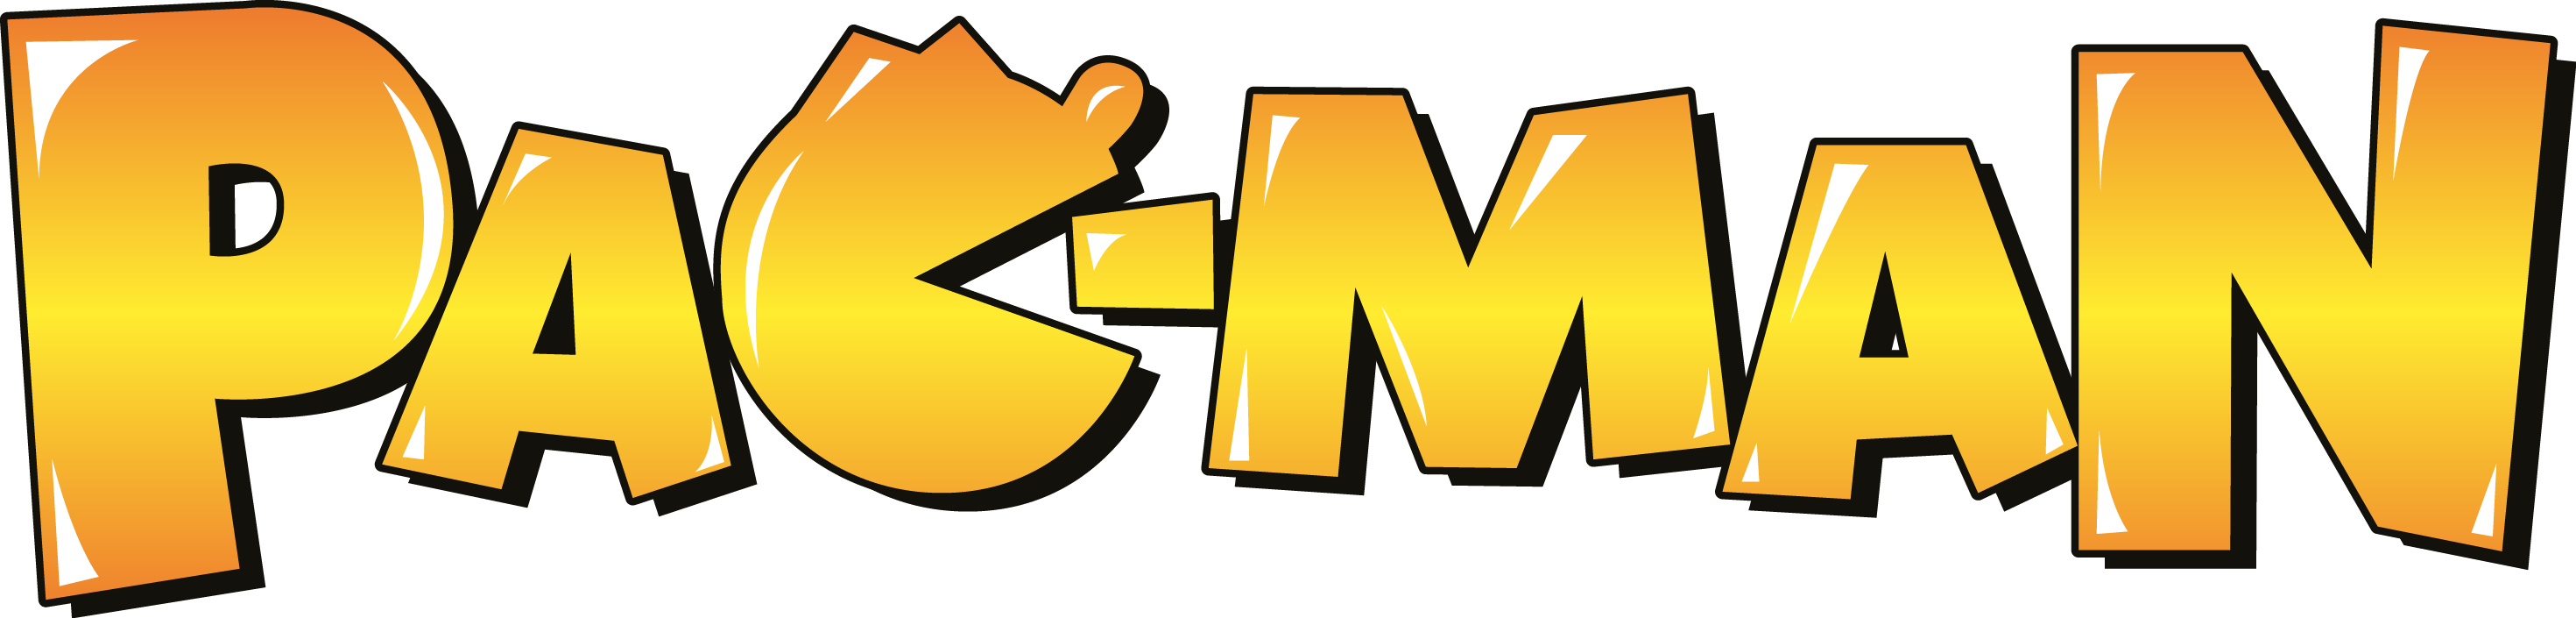 Pacman Logo PNG HD Quality